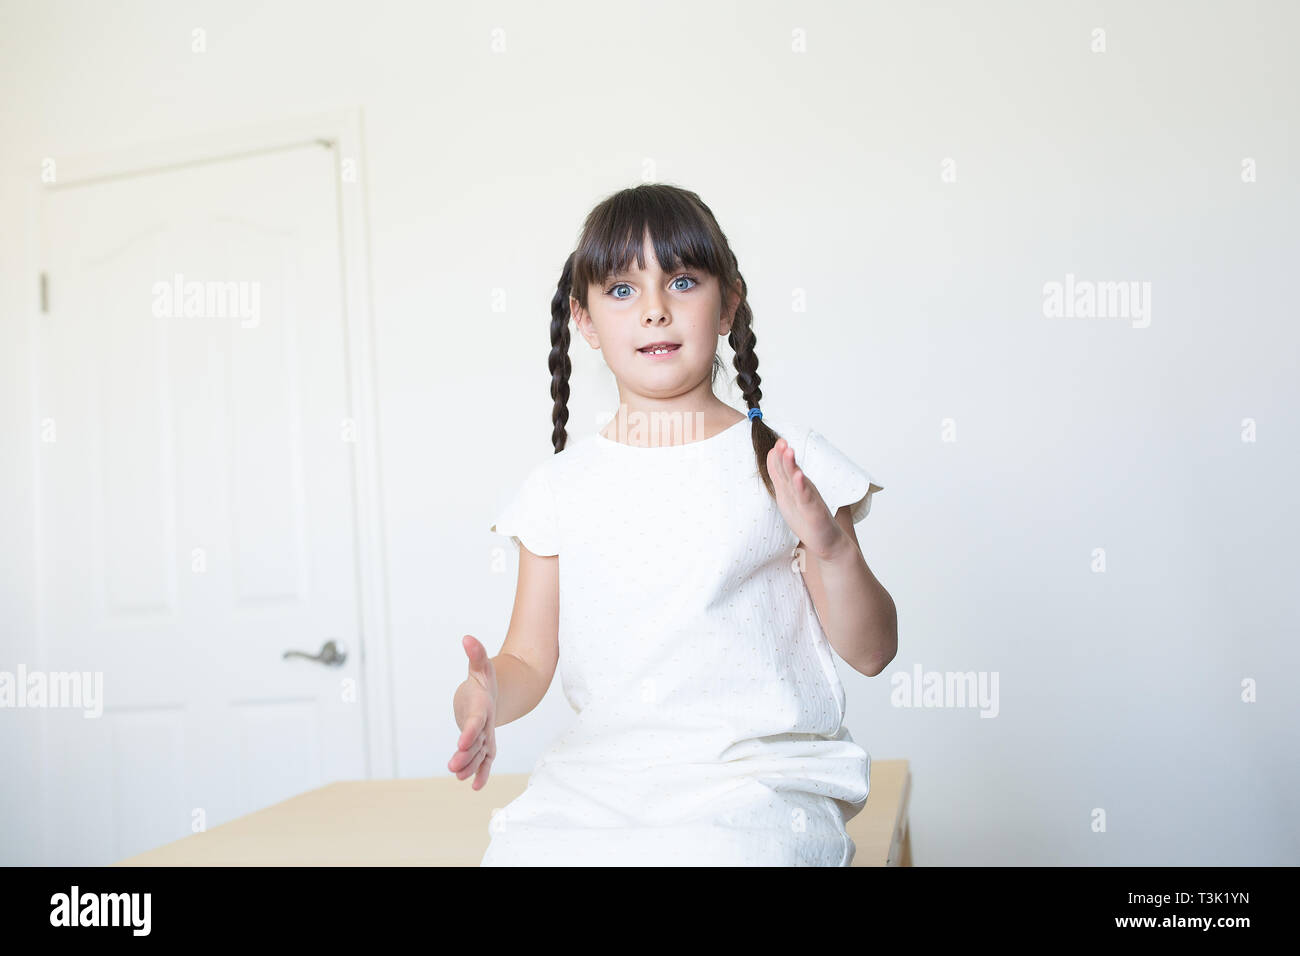 6-7 Jahre altes Mädchen wird mit Bsb-Sprache zu sprechen Stockfoto